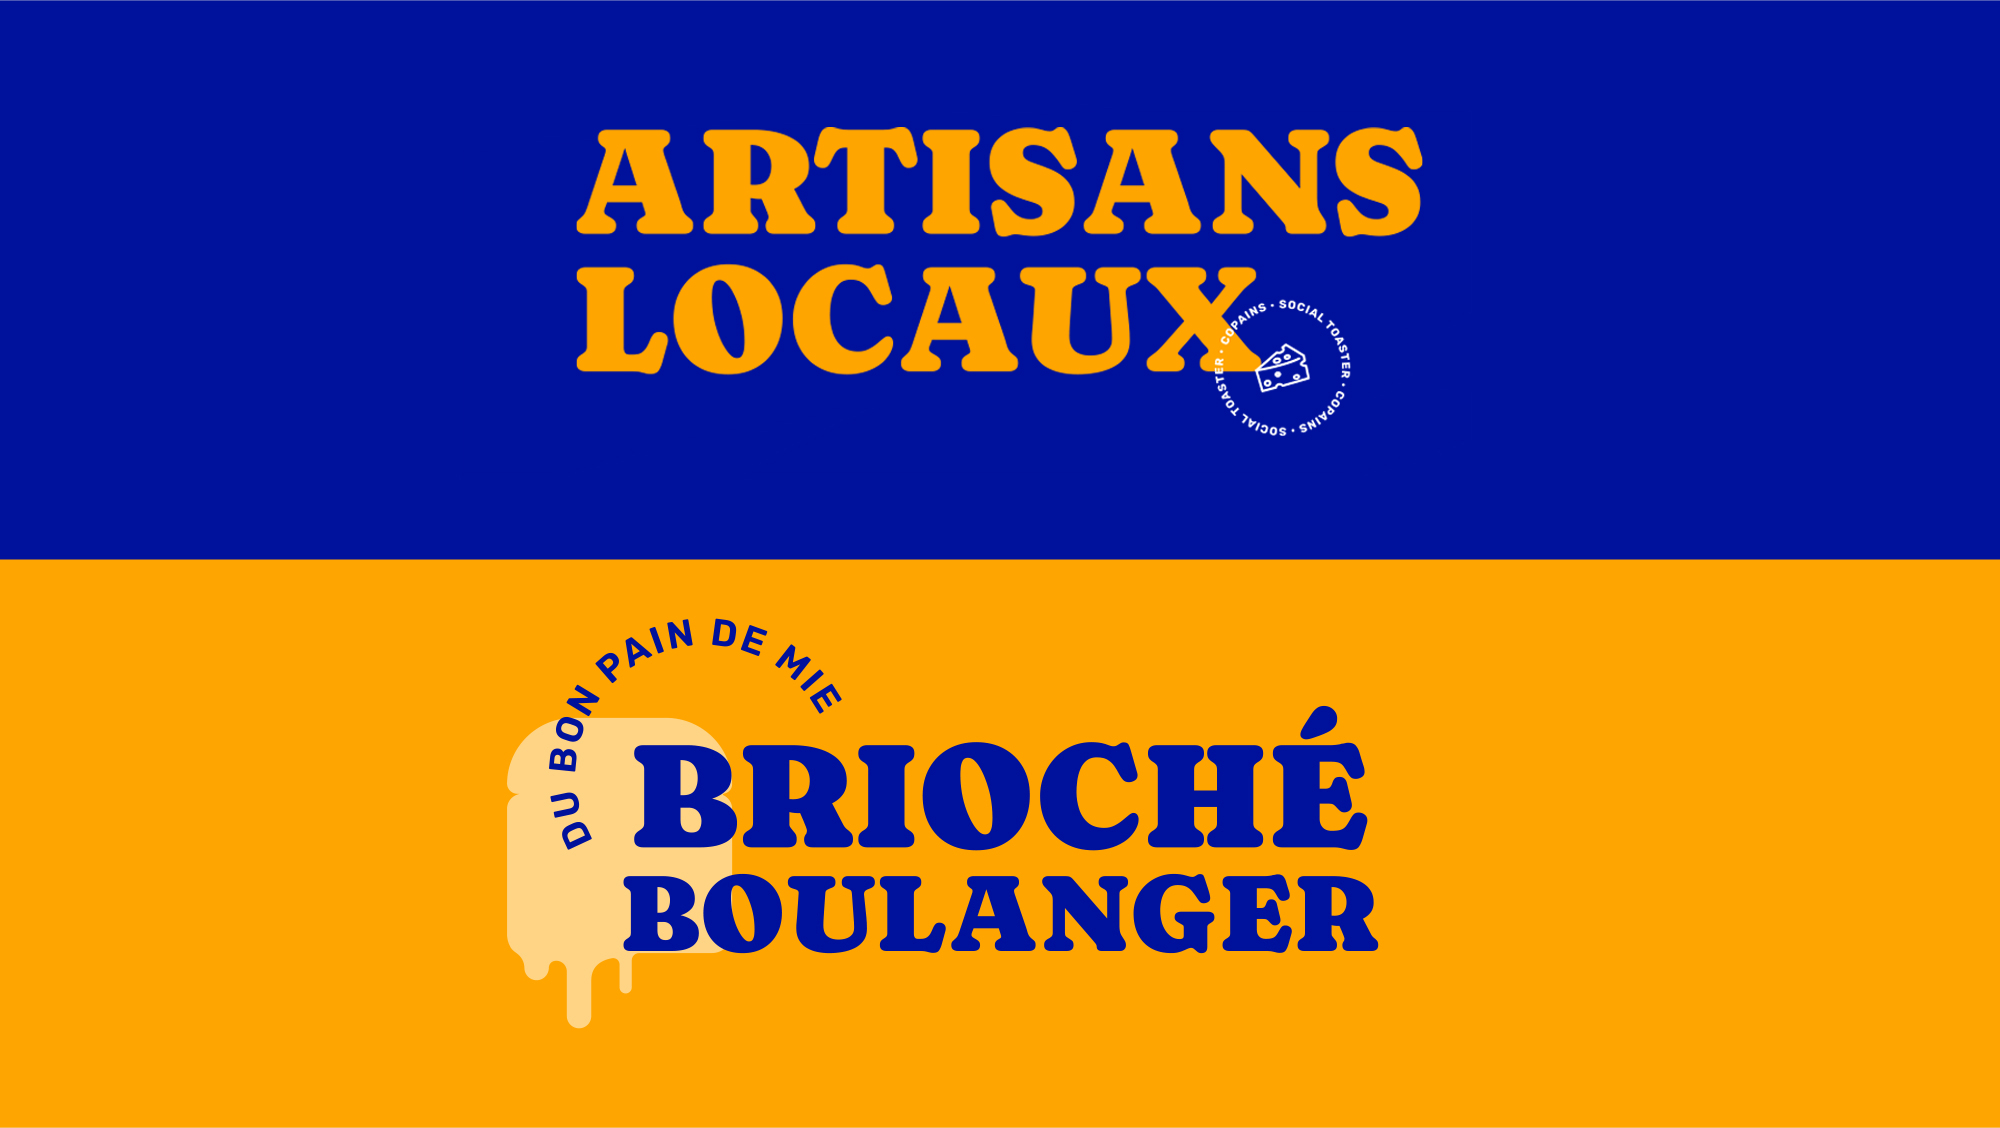 Texte avec typo du logo "Artisans locaux" "du bon paind e mie brioché boulanger"